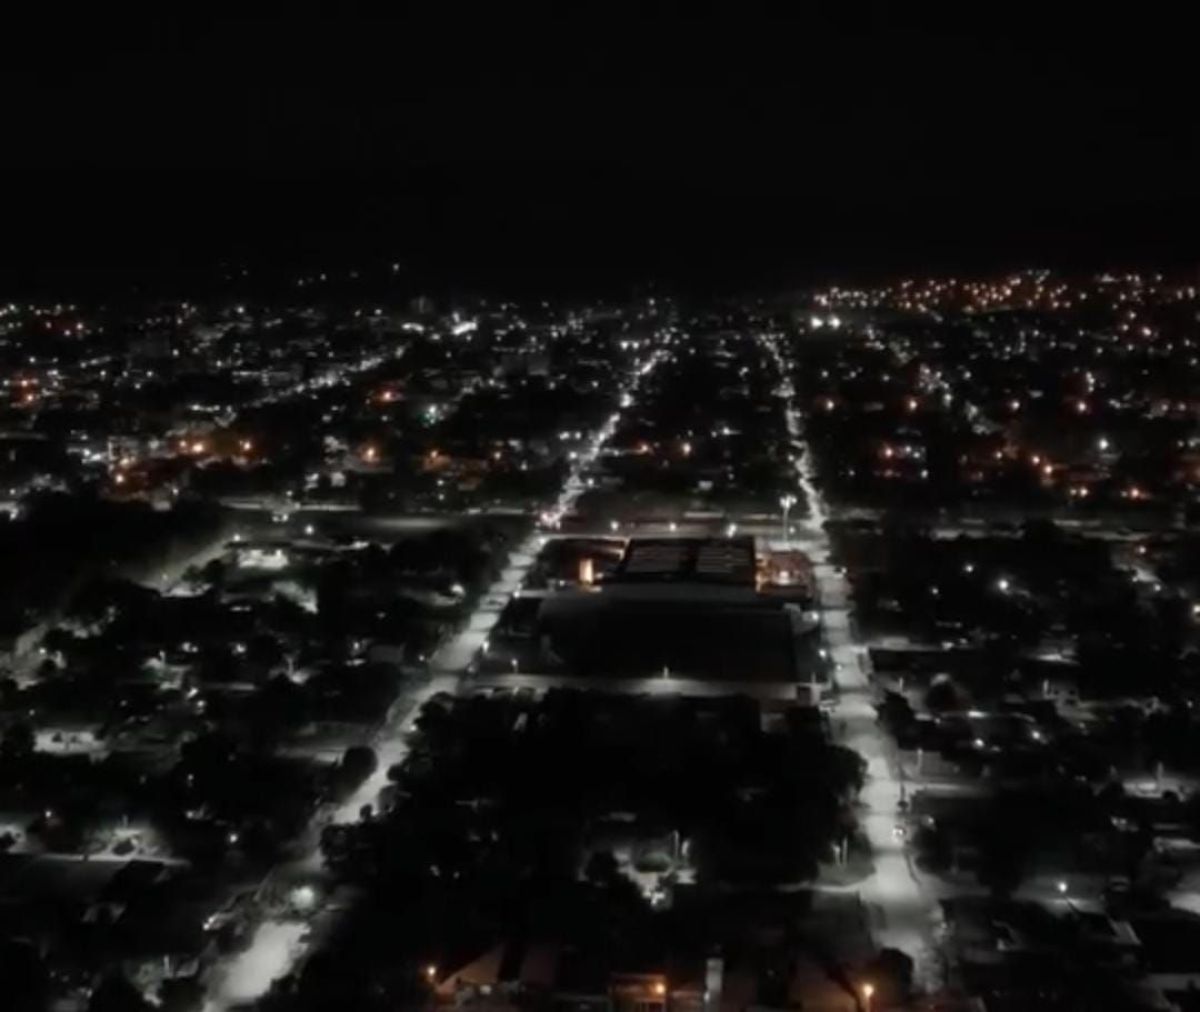 La Municipalidad de Tartagal incorporó luces LED en las principales calles de los barrios San Silvestre 1 y 2